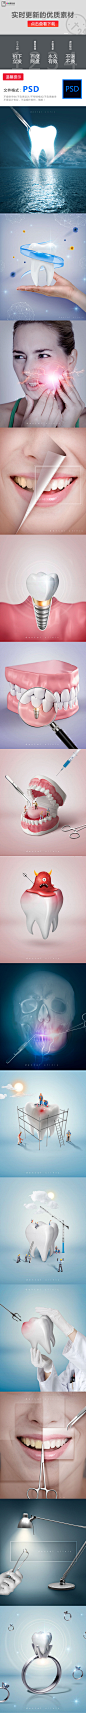 牙齿口腔诊所医疗海报设计素材